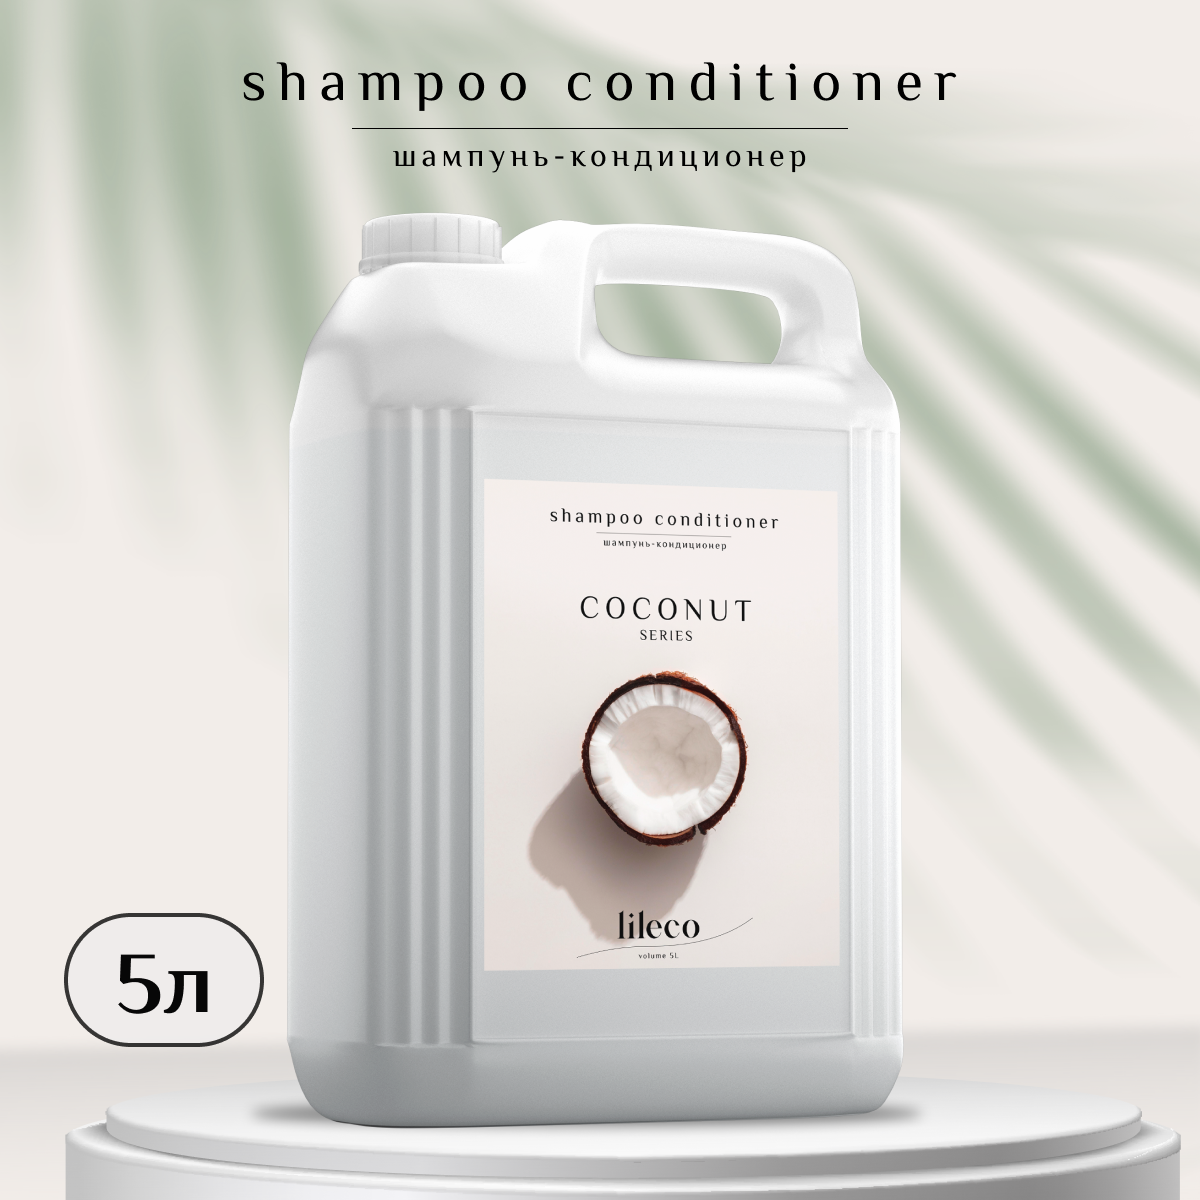 Шампунь для волос Lil Eco с ароматом кокоса 5л шампунь дом природы кокосовый 250 г